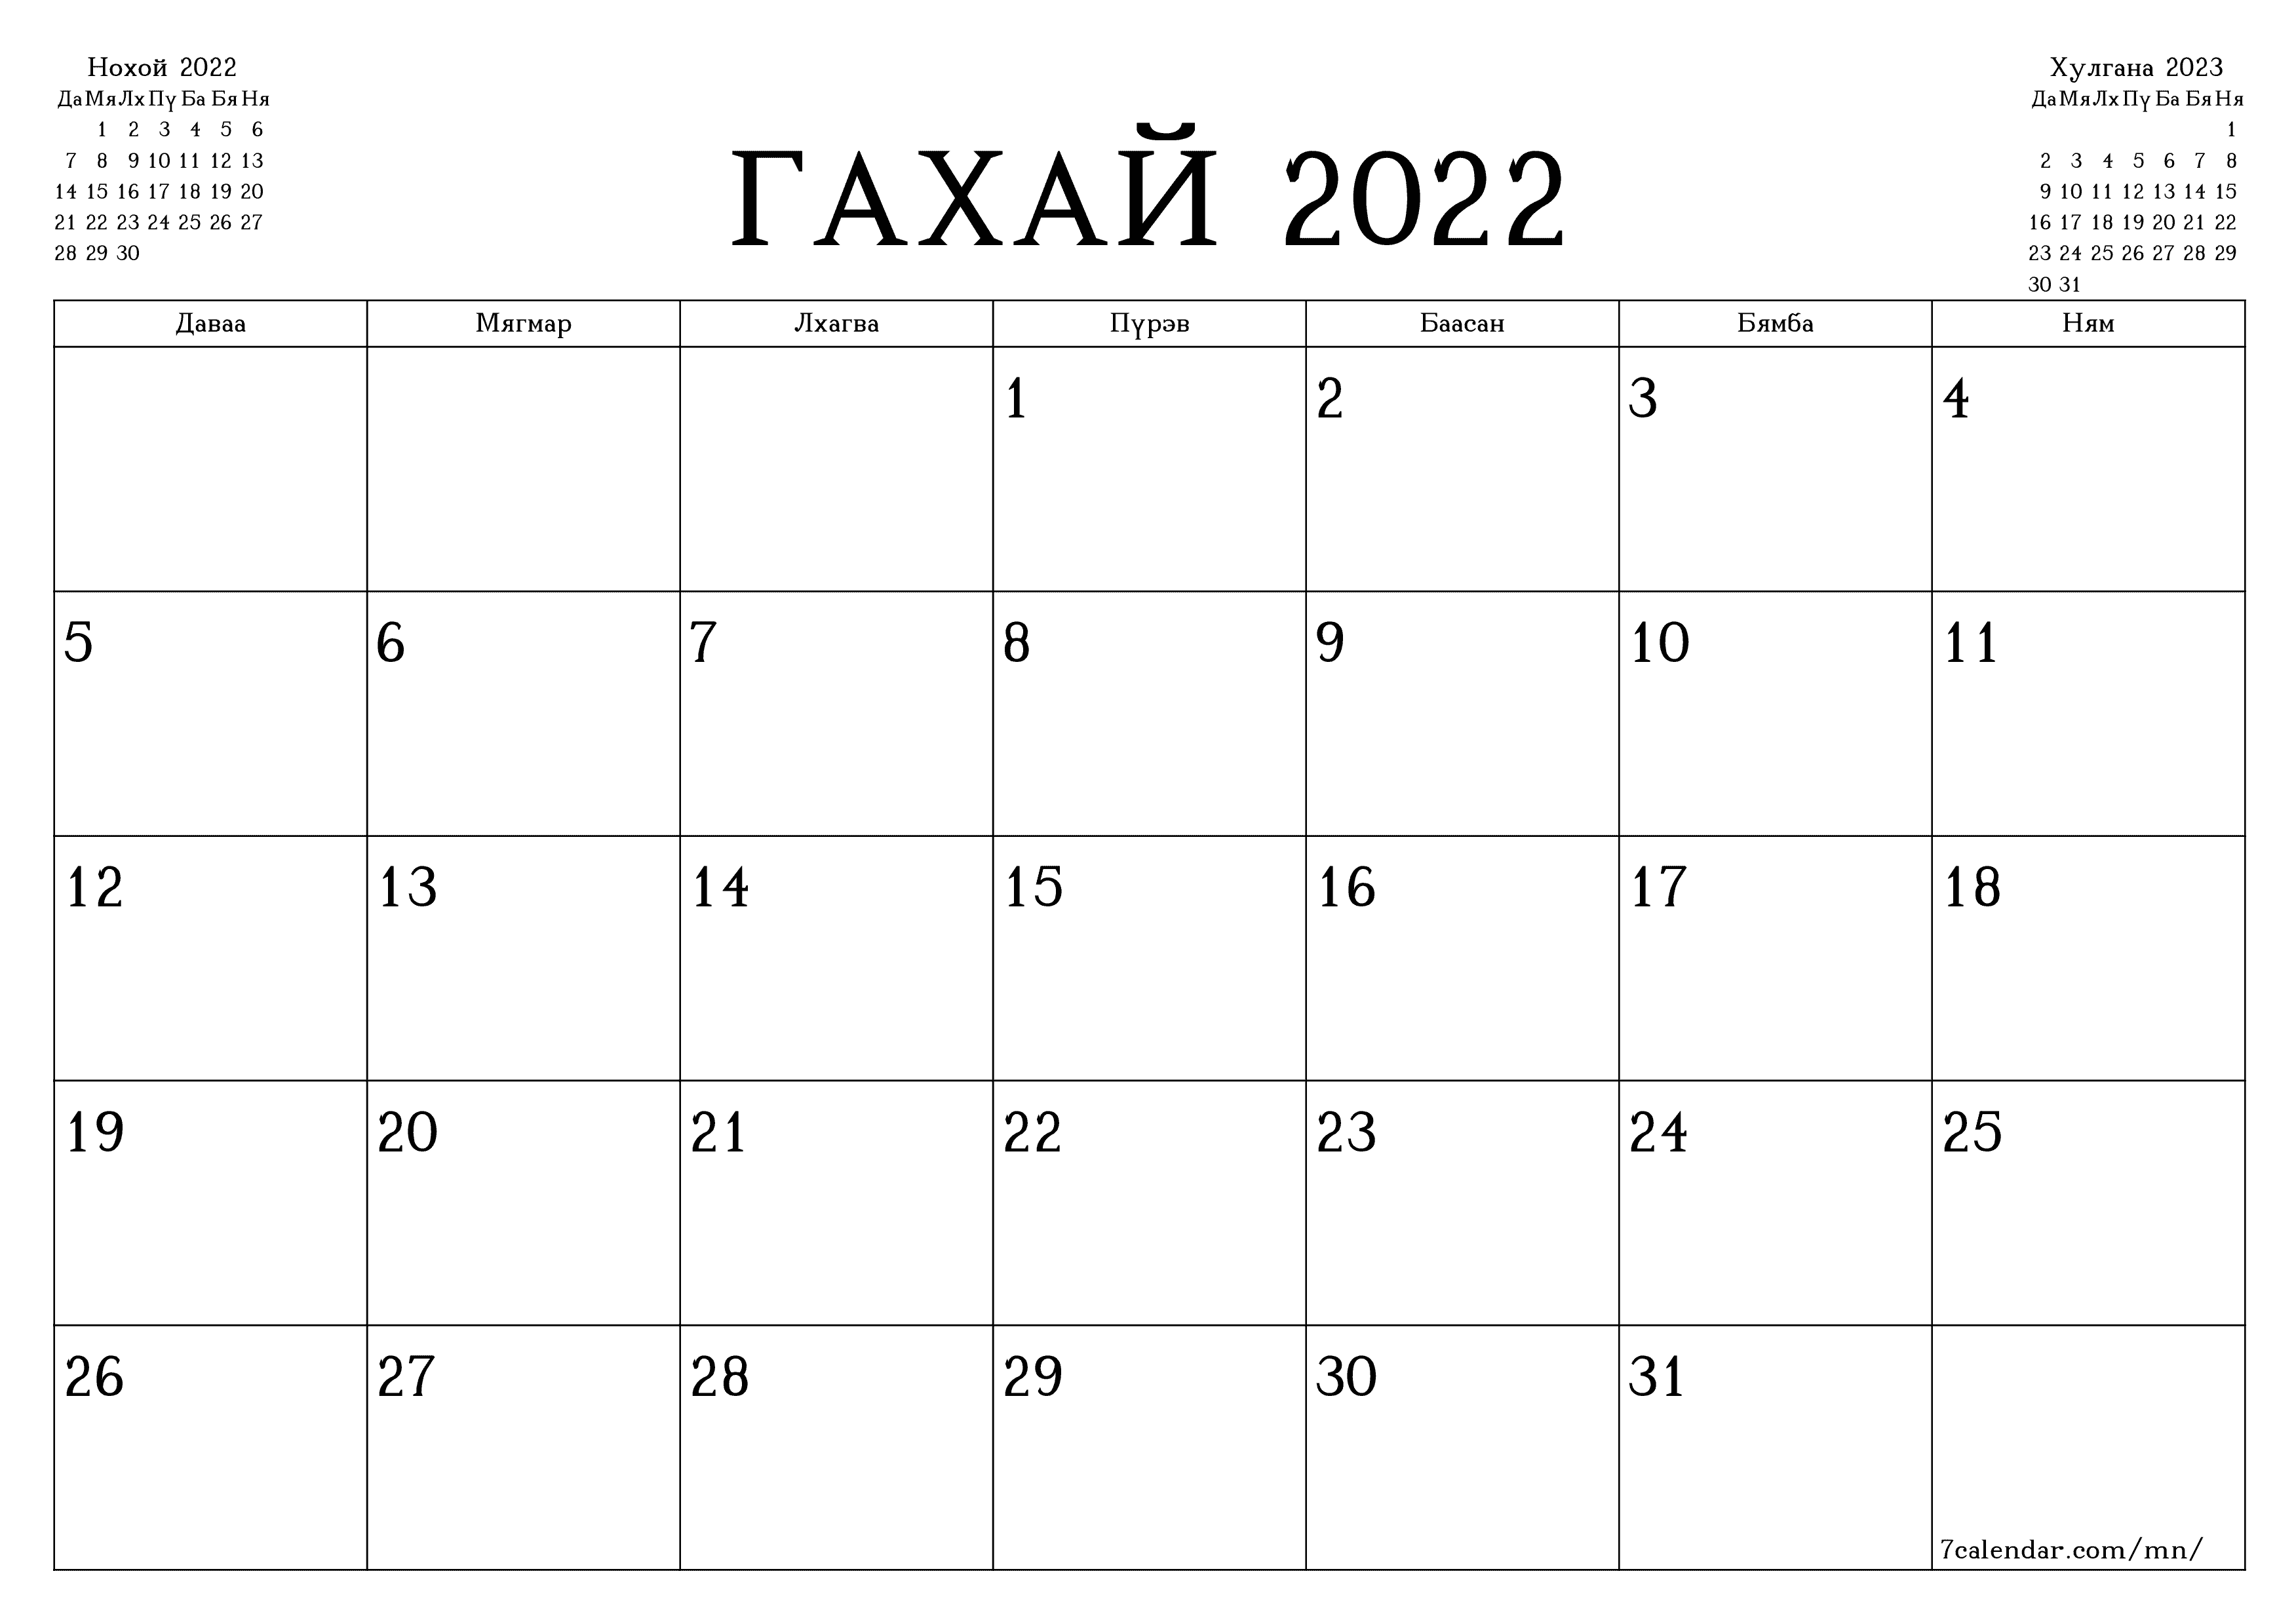 хэвлэх боломжтой ханын календарийн загвар үнэгүй хэвтээ Сар бүр төлөвлөгч хуанли Гахай (Гах) 2022